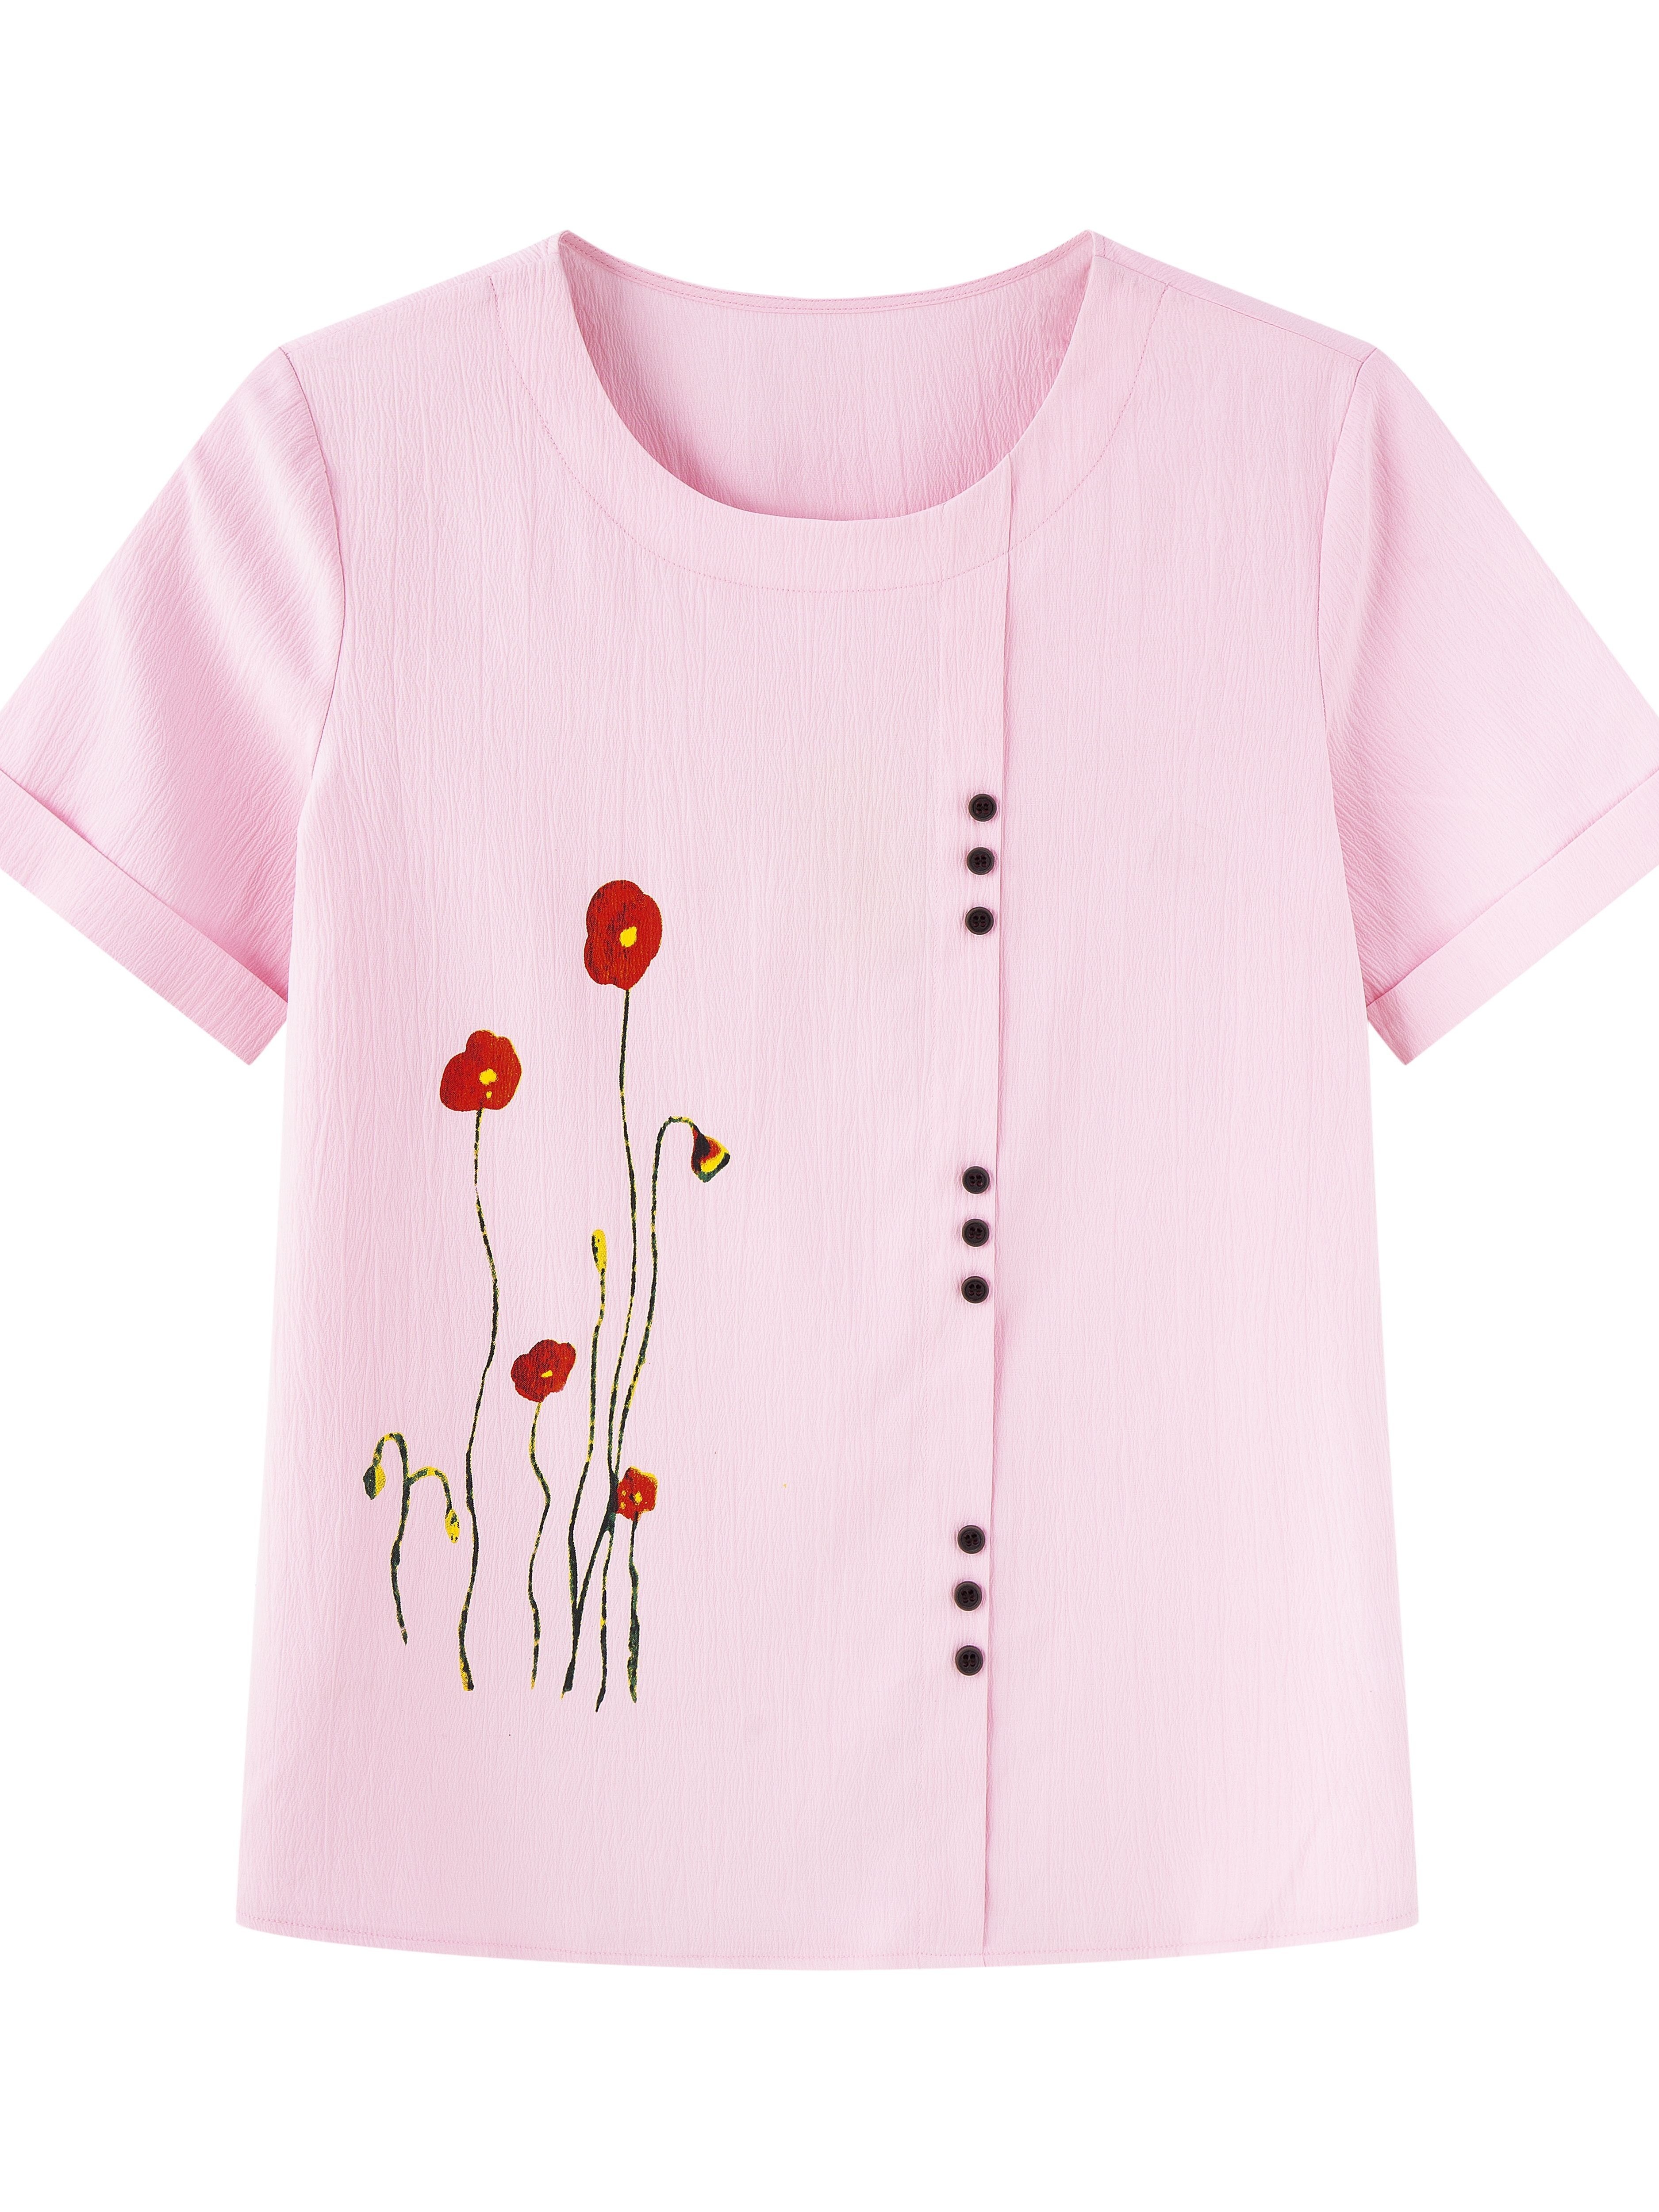 Basics - Camisa de verano para mujer, cuello redondo, botones, algodón y  lino, estampado de diente de león, manga corta, blusa (1-rosa, XL)